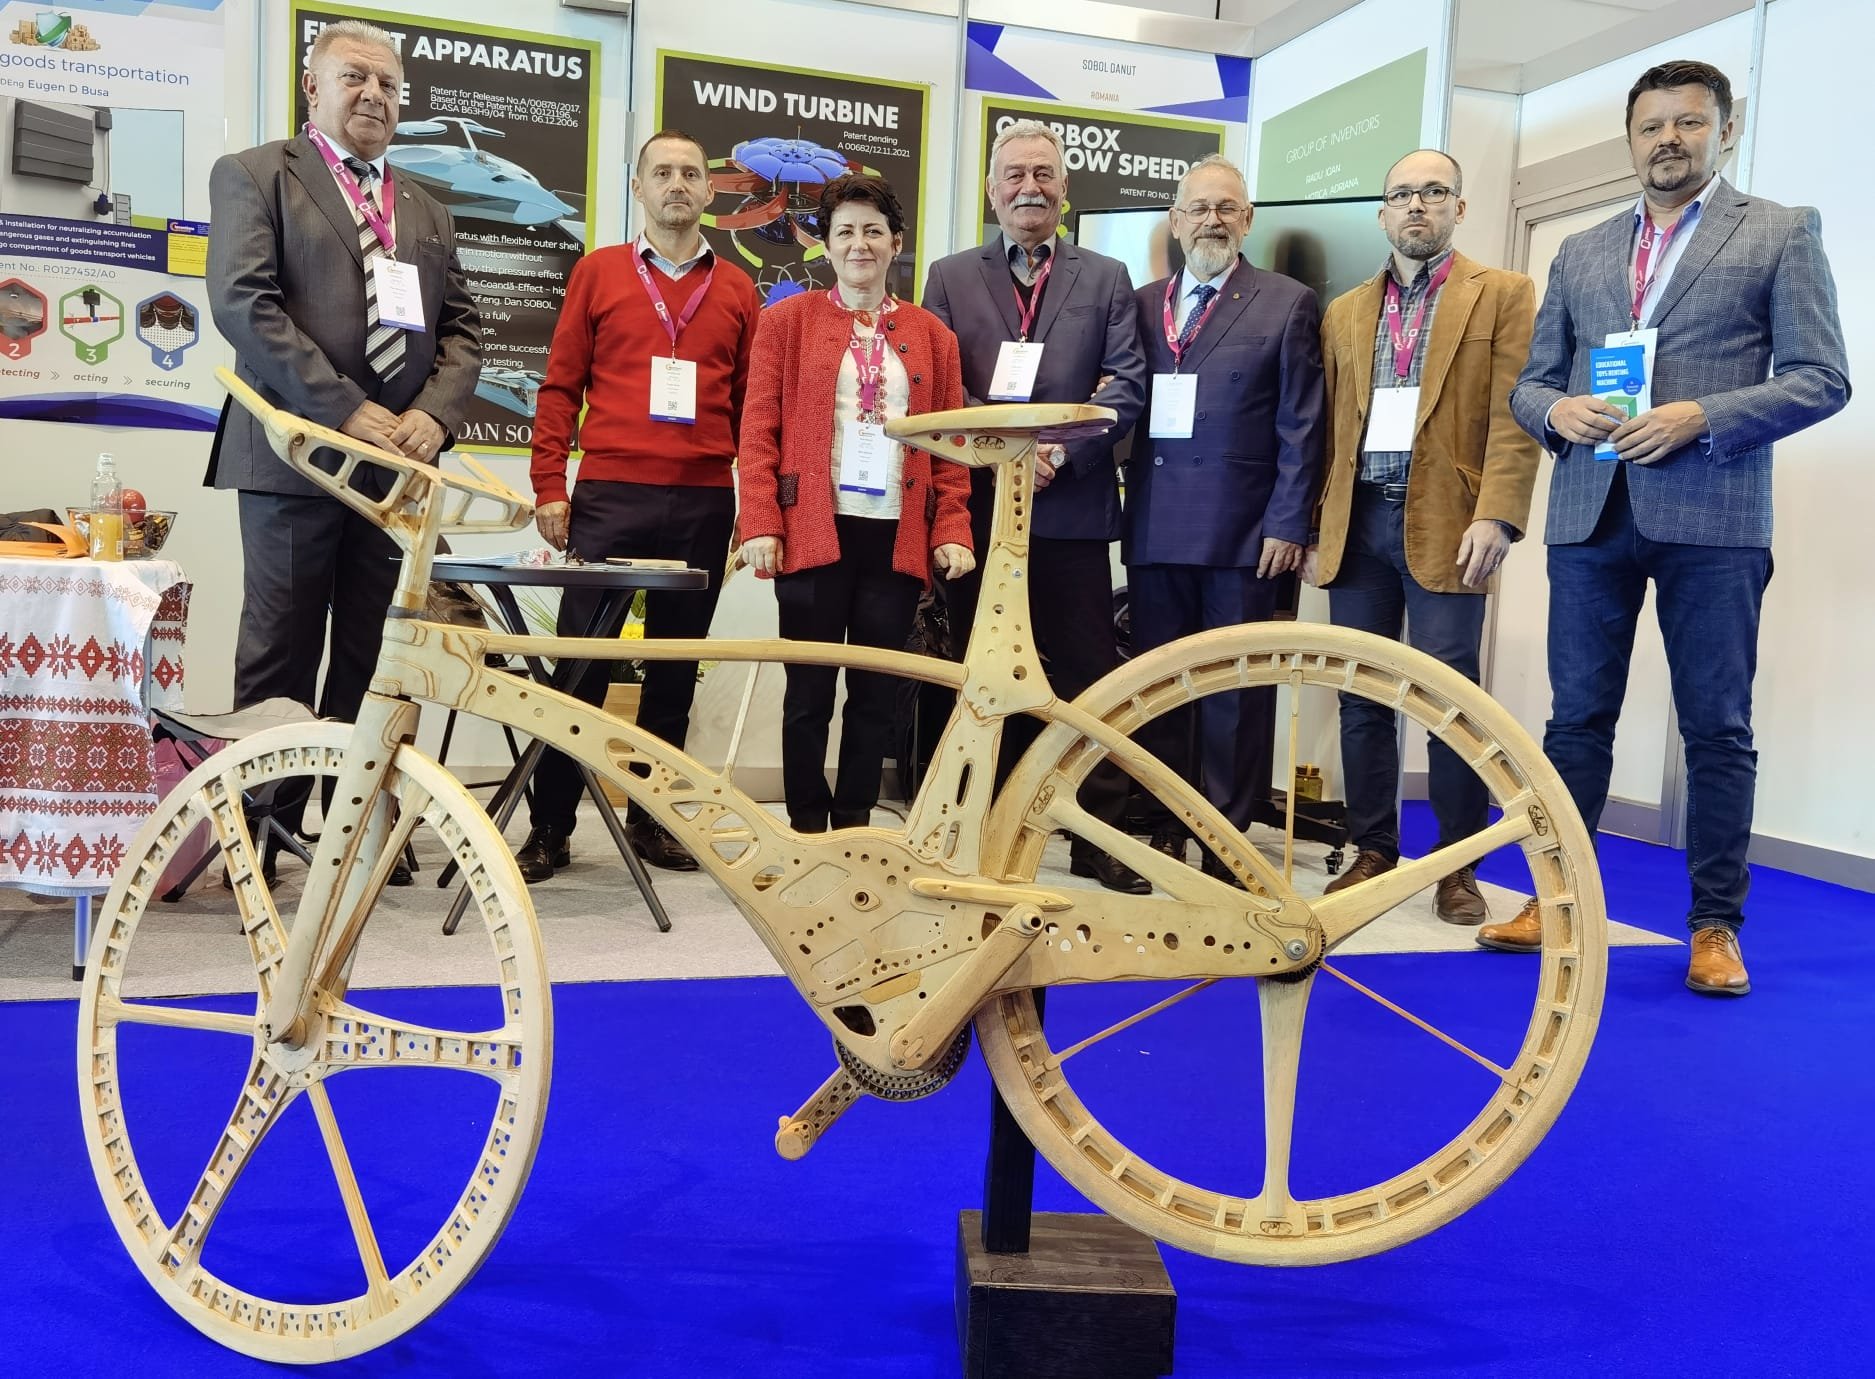  Cea mai uşoară bicicletă din lume, realizată de inventatori români, atracţie la Salonul Mondial de Invenţii de la Geneva